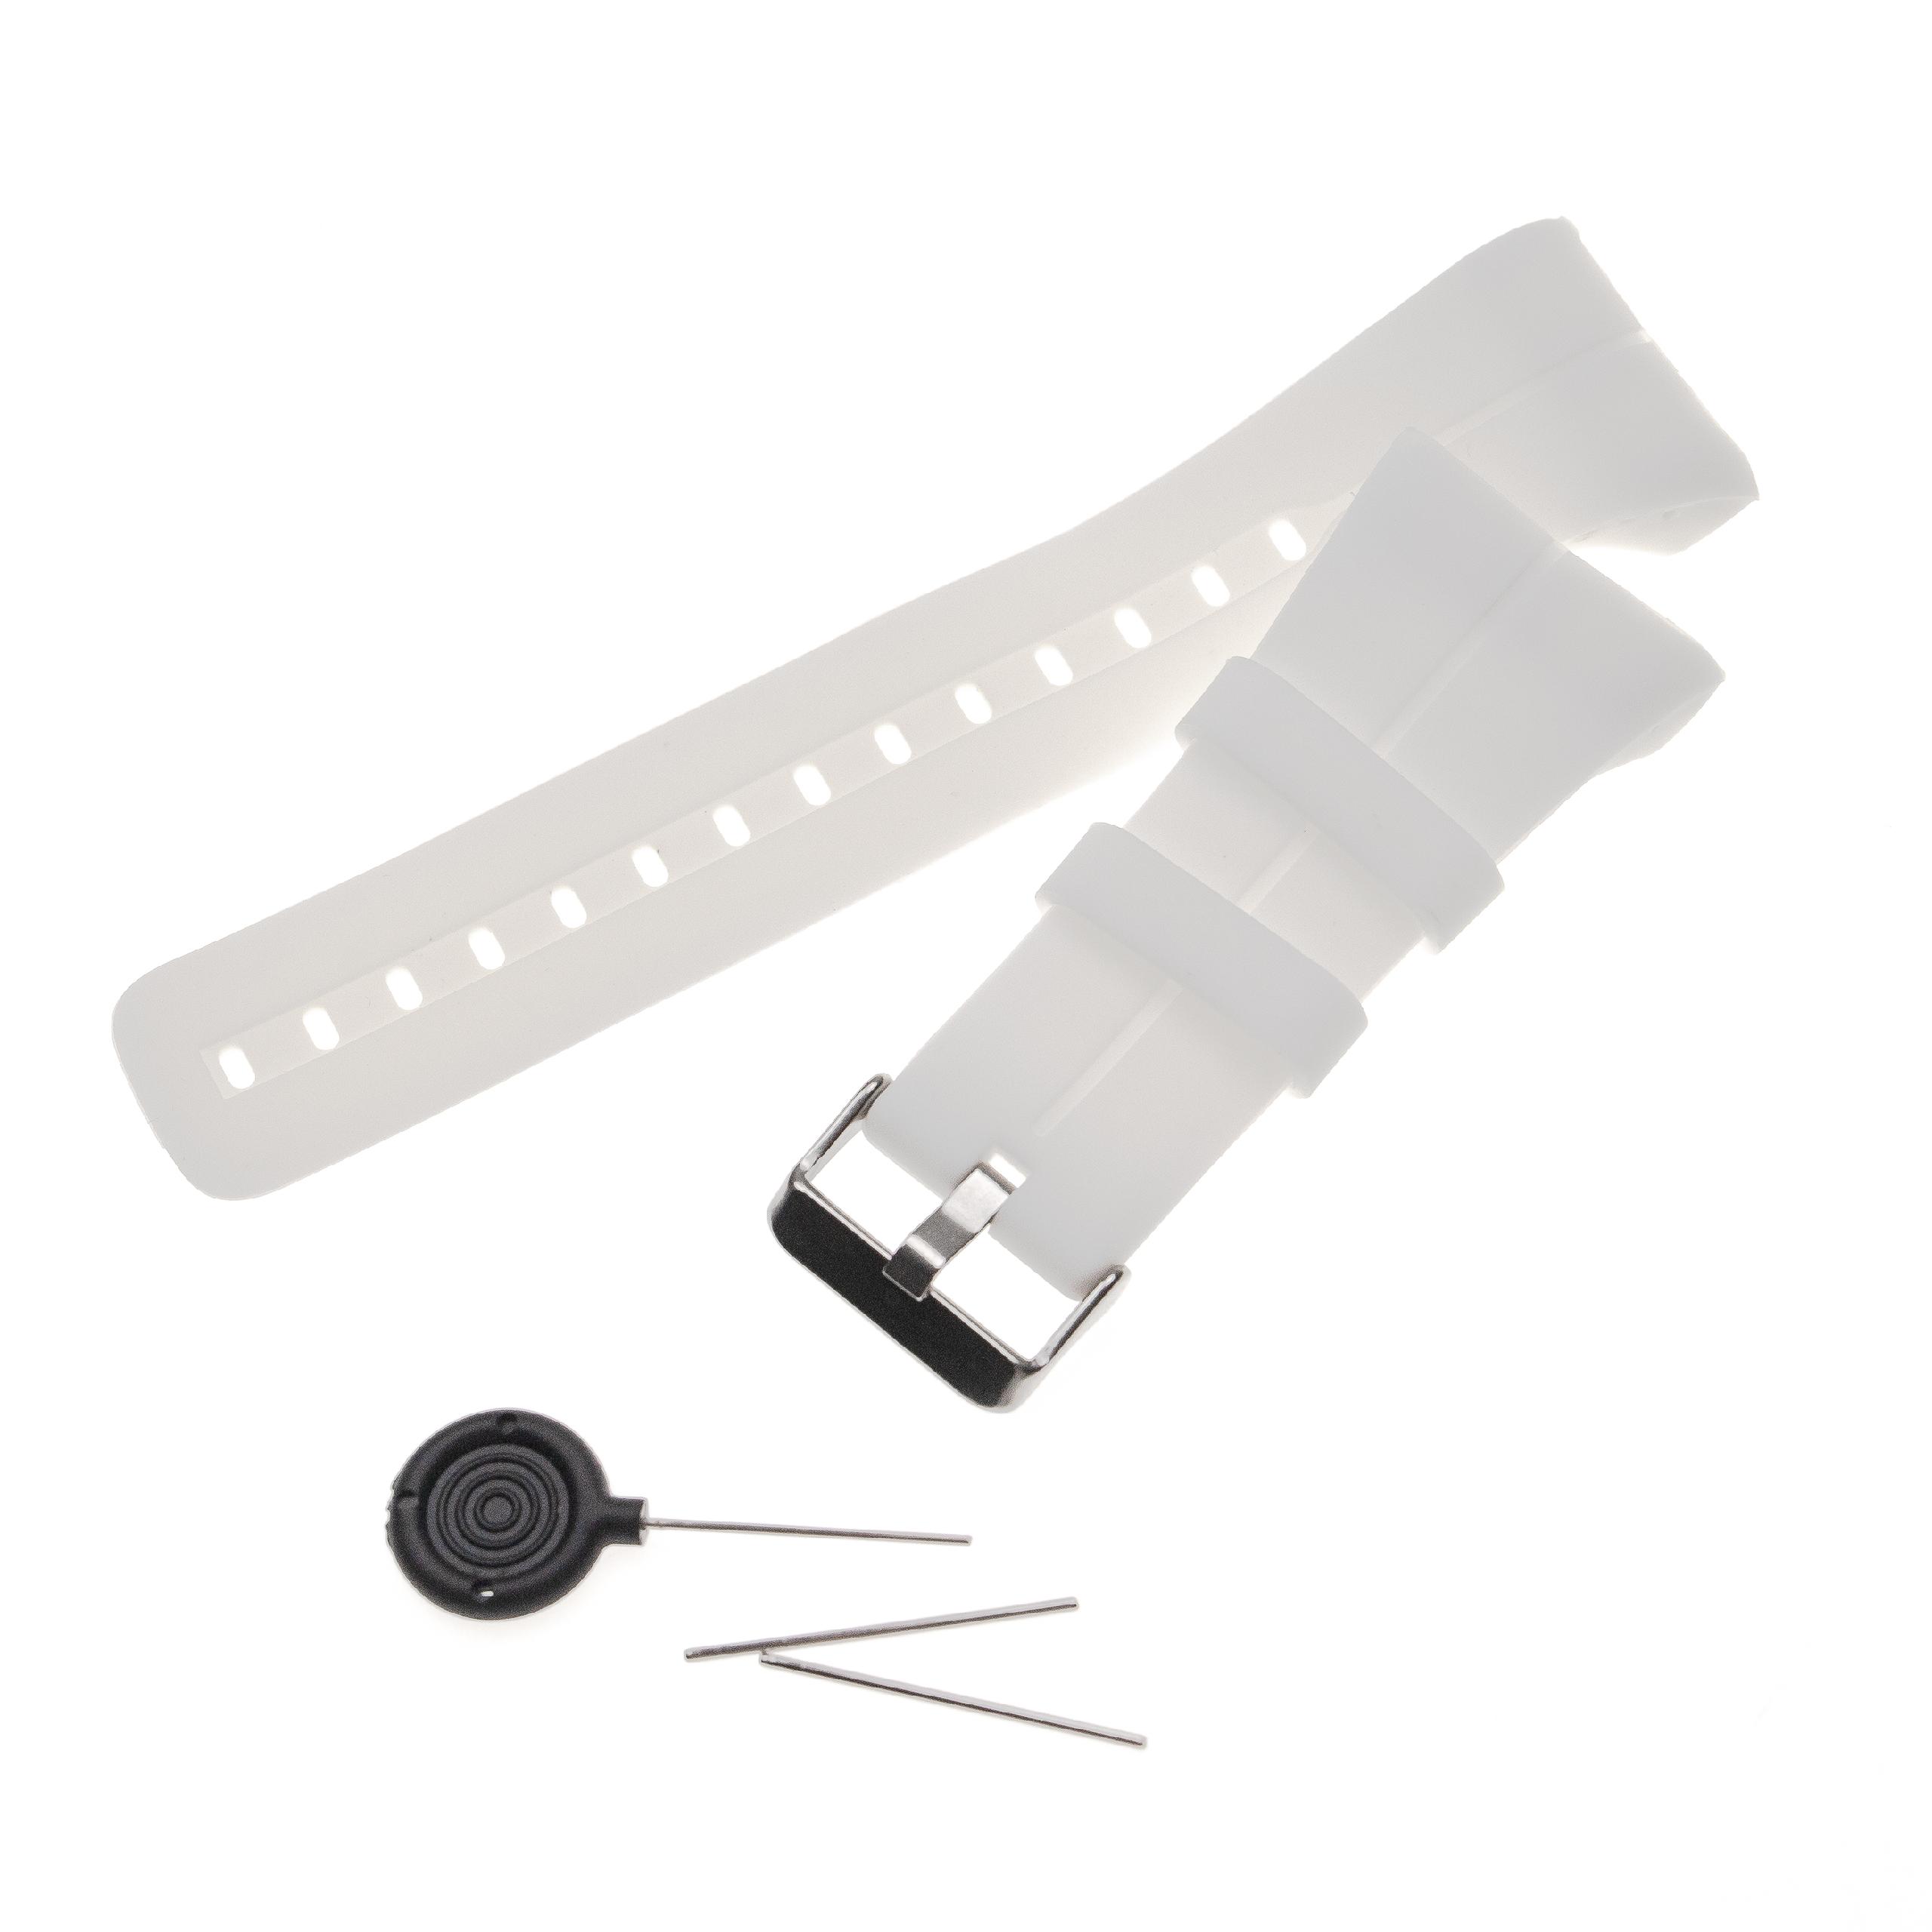 Pasek do smartwatch Polar - dł. 14,5 + 8,9 cm, szer. 34 mm, silikon, biały